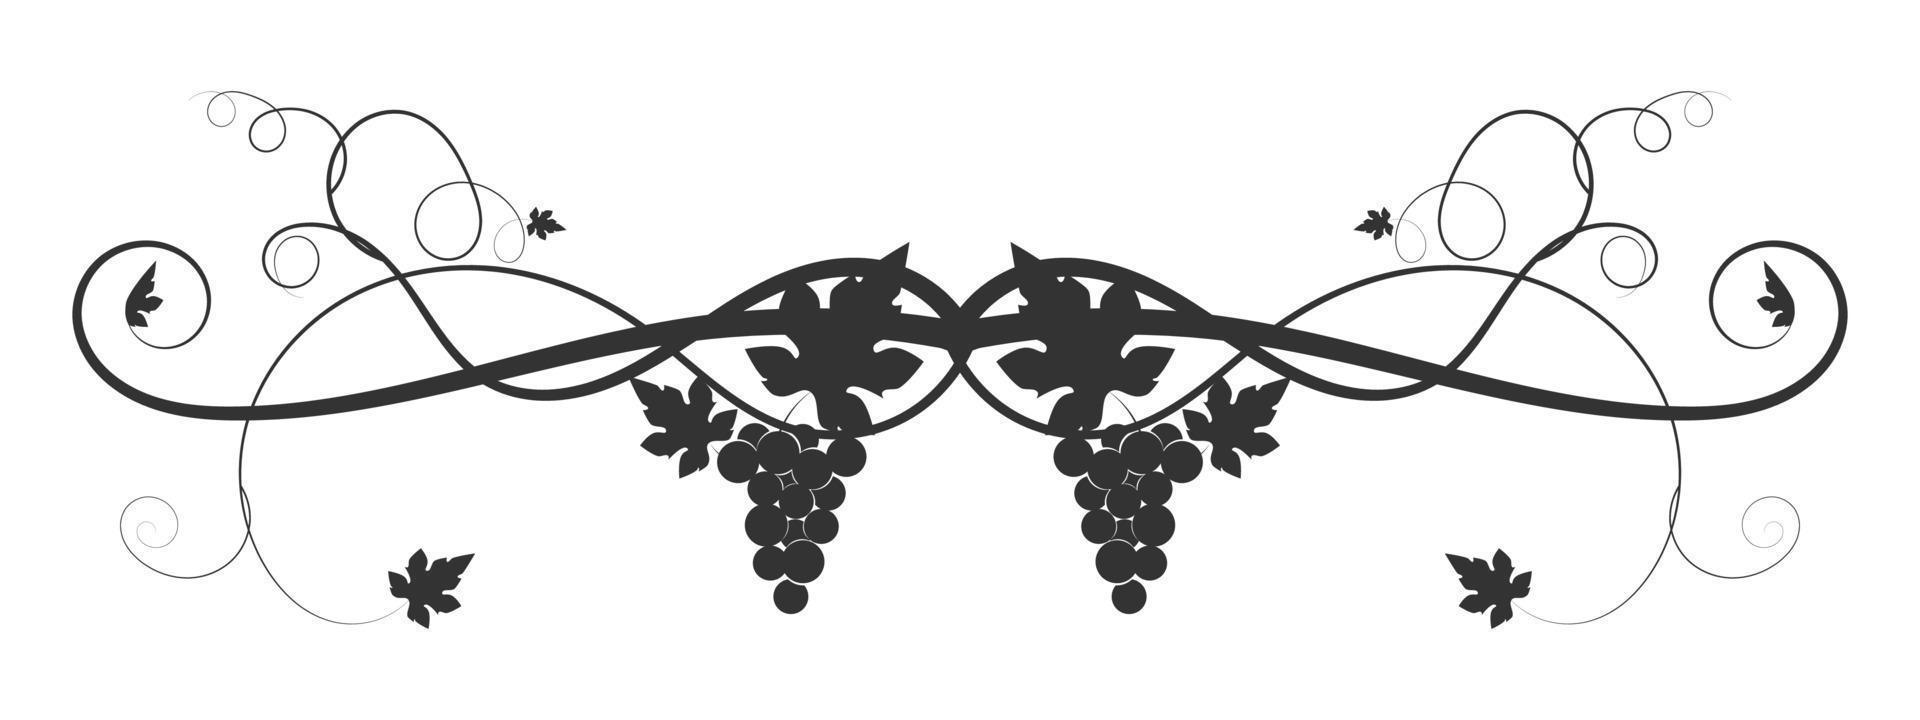 Tejido de uva vid dibujada sobre un fondo blanco. vector